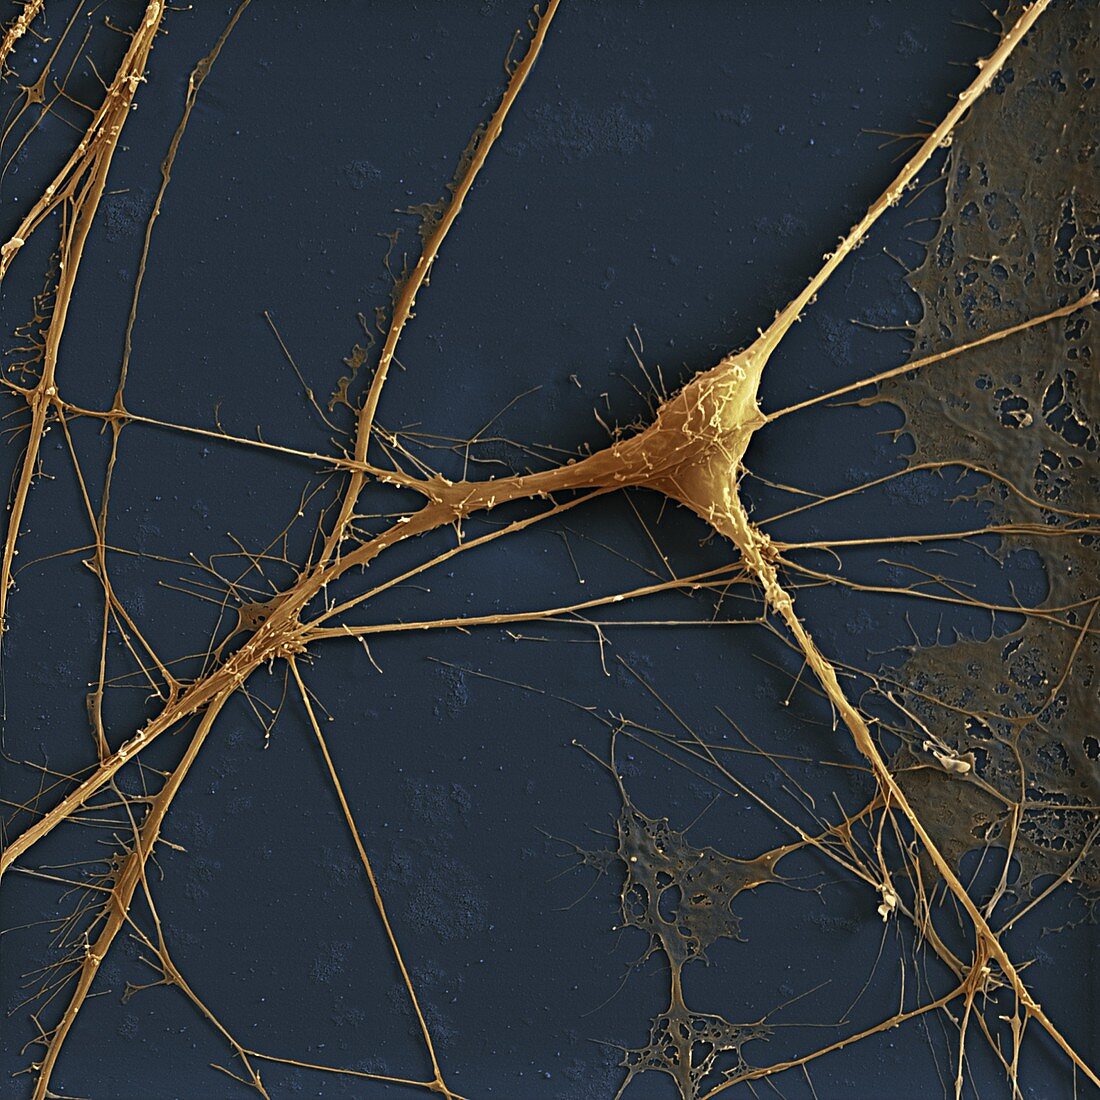 Spinal ganglion nerve cells, SEM